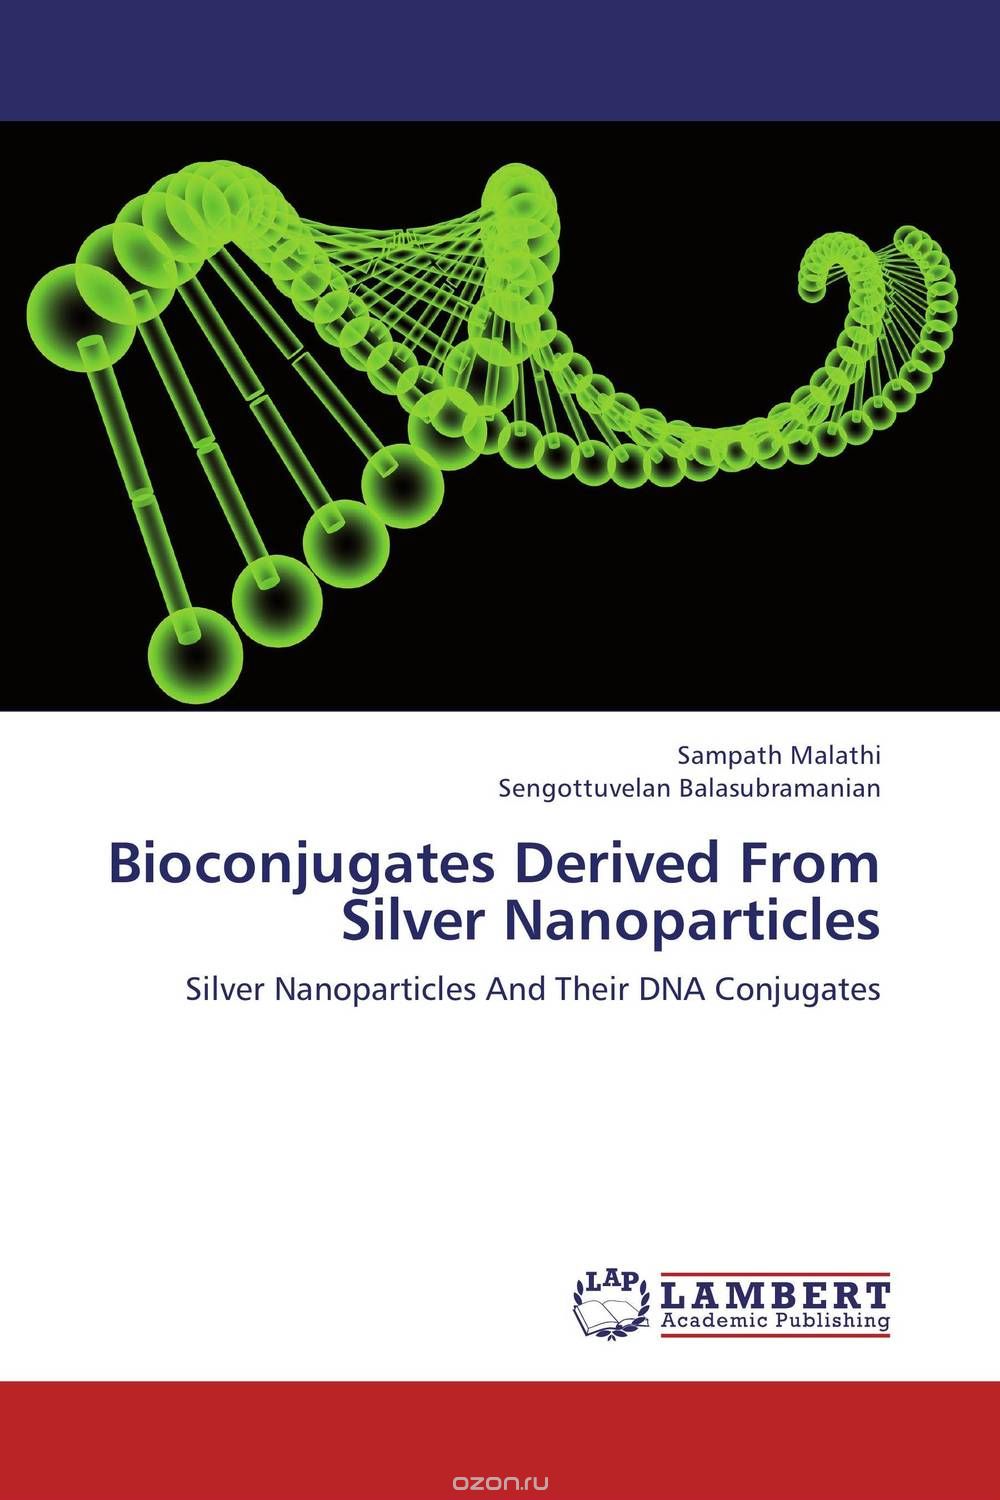 Скачать книгу "Bioconjugates Derived From Silver Nanoparticles"